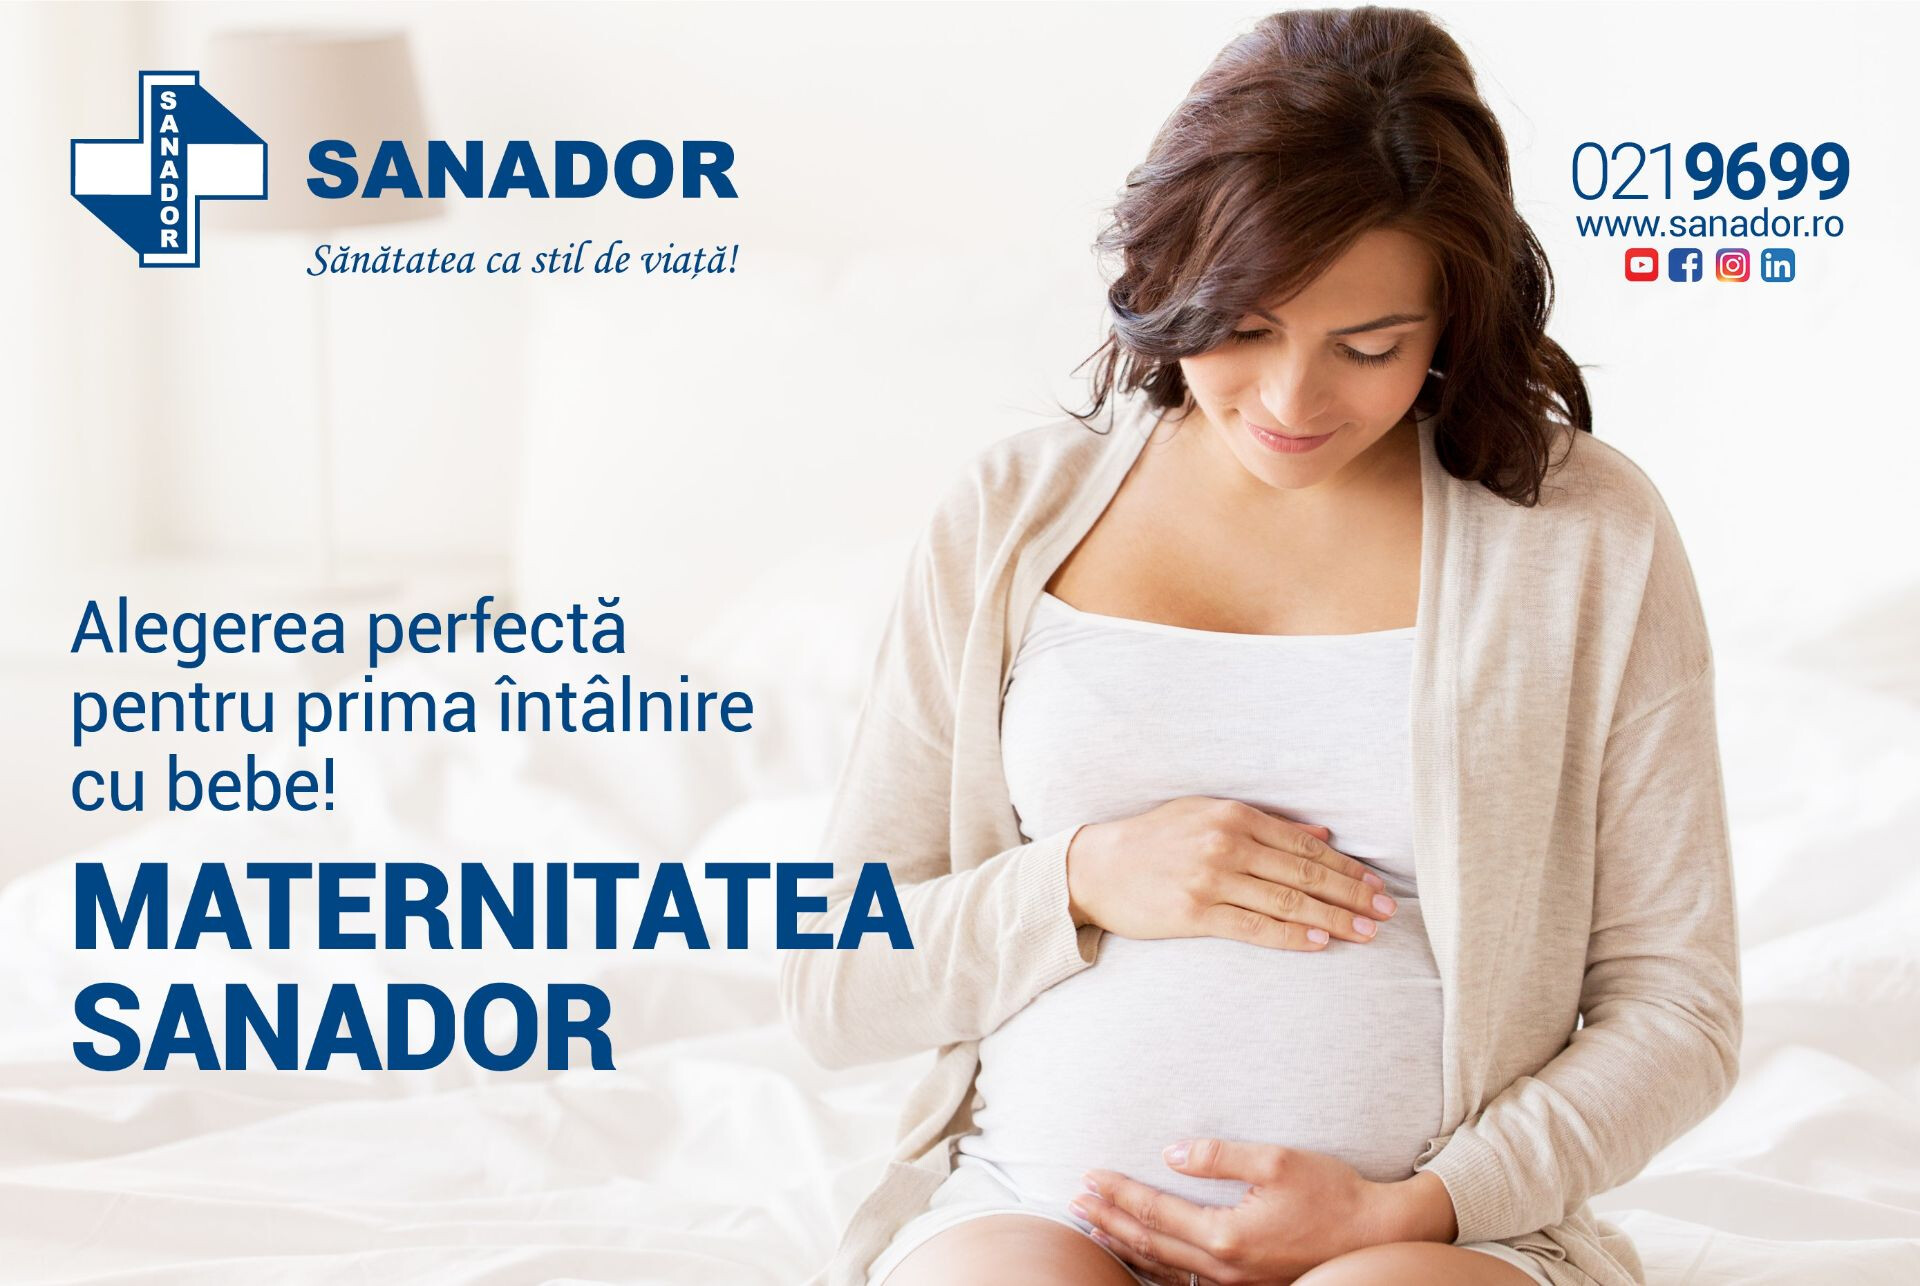 SANADOR oferă discounturi speciale la pachetele de naștere, în perioada 1–8 martie